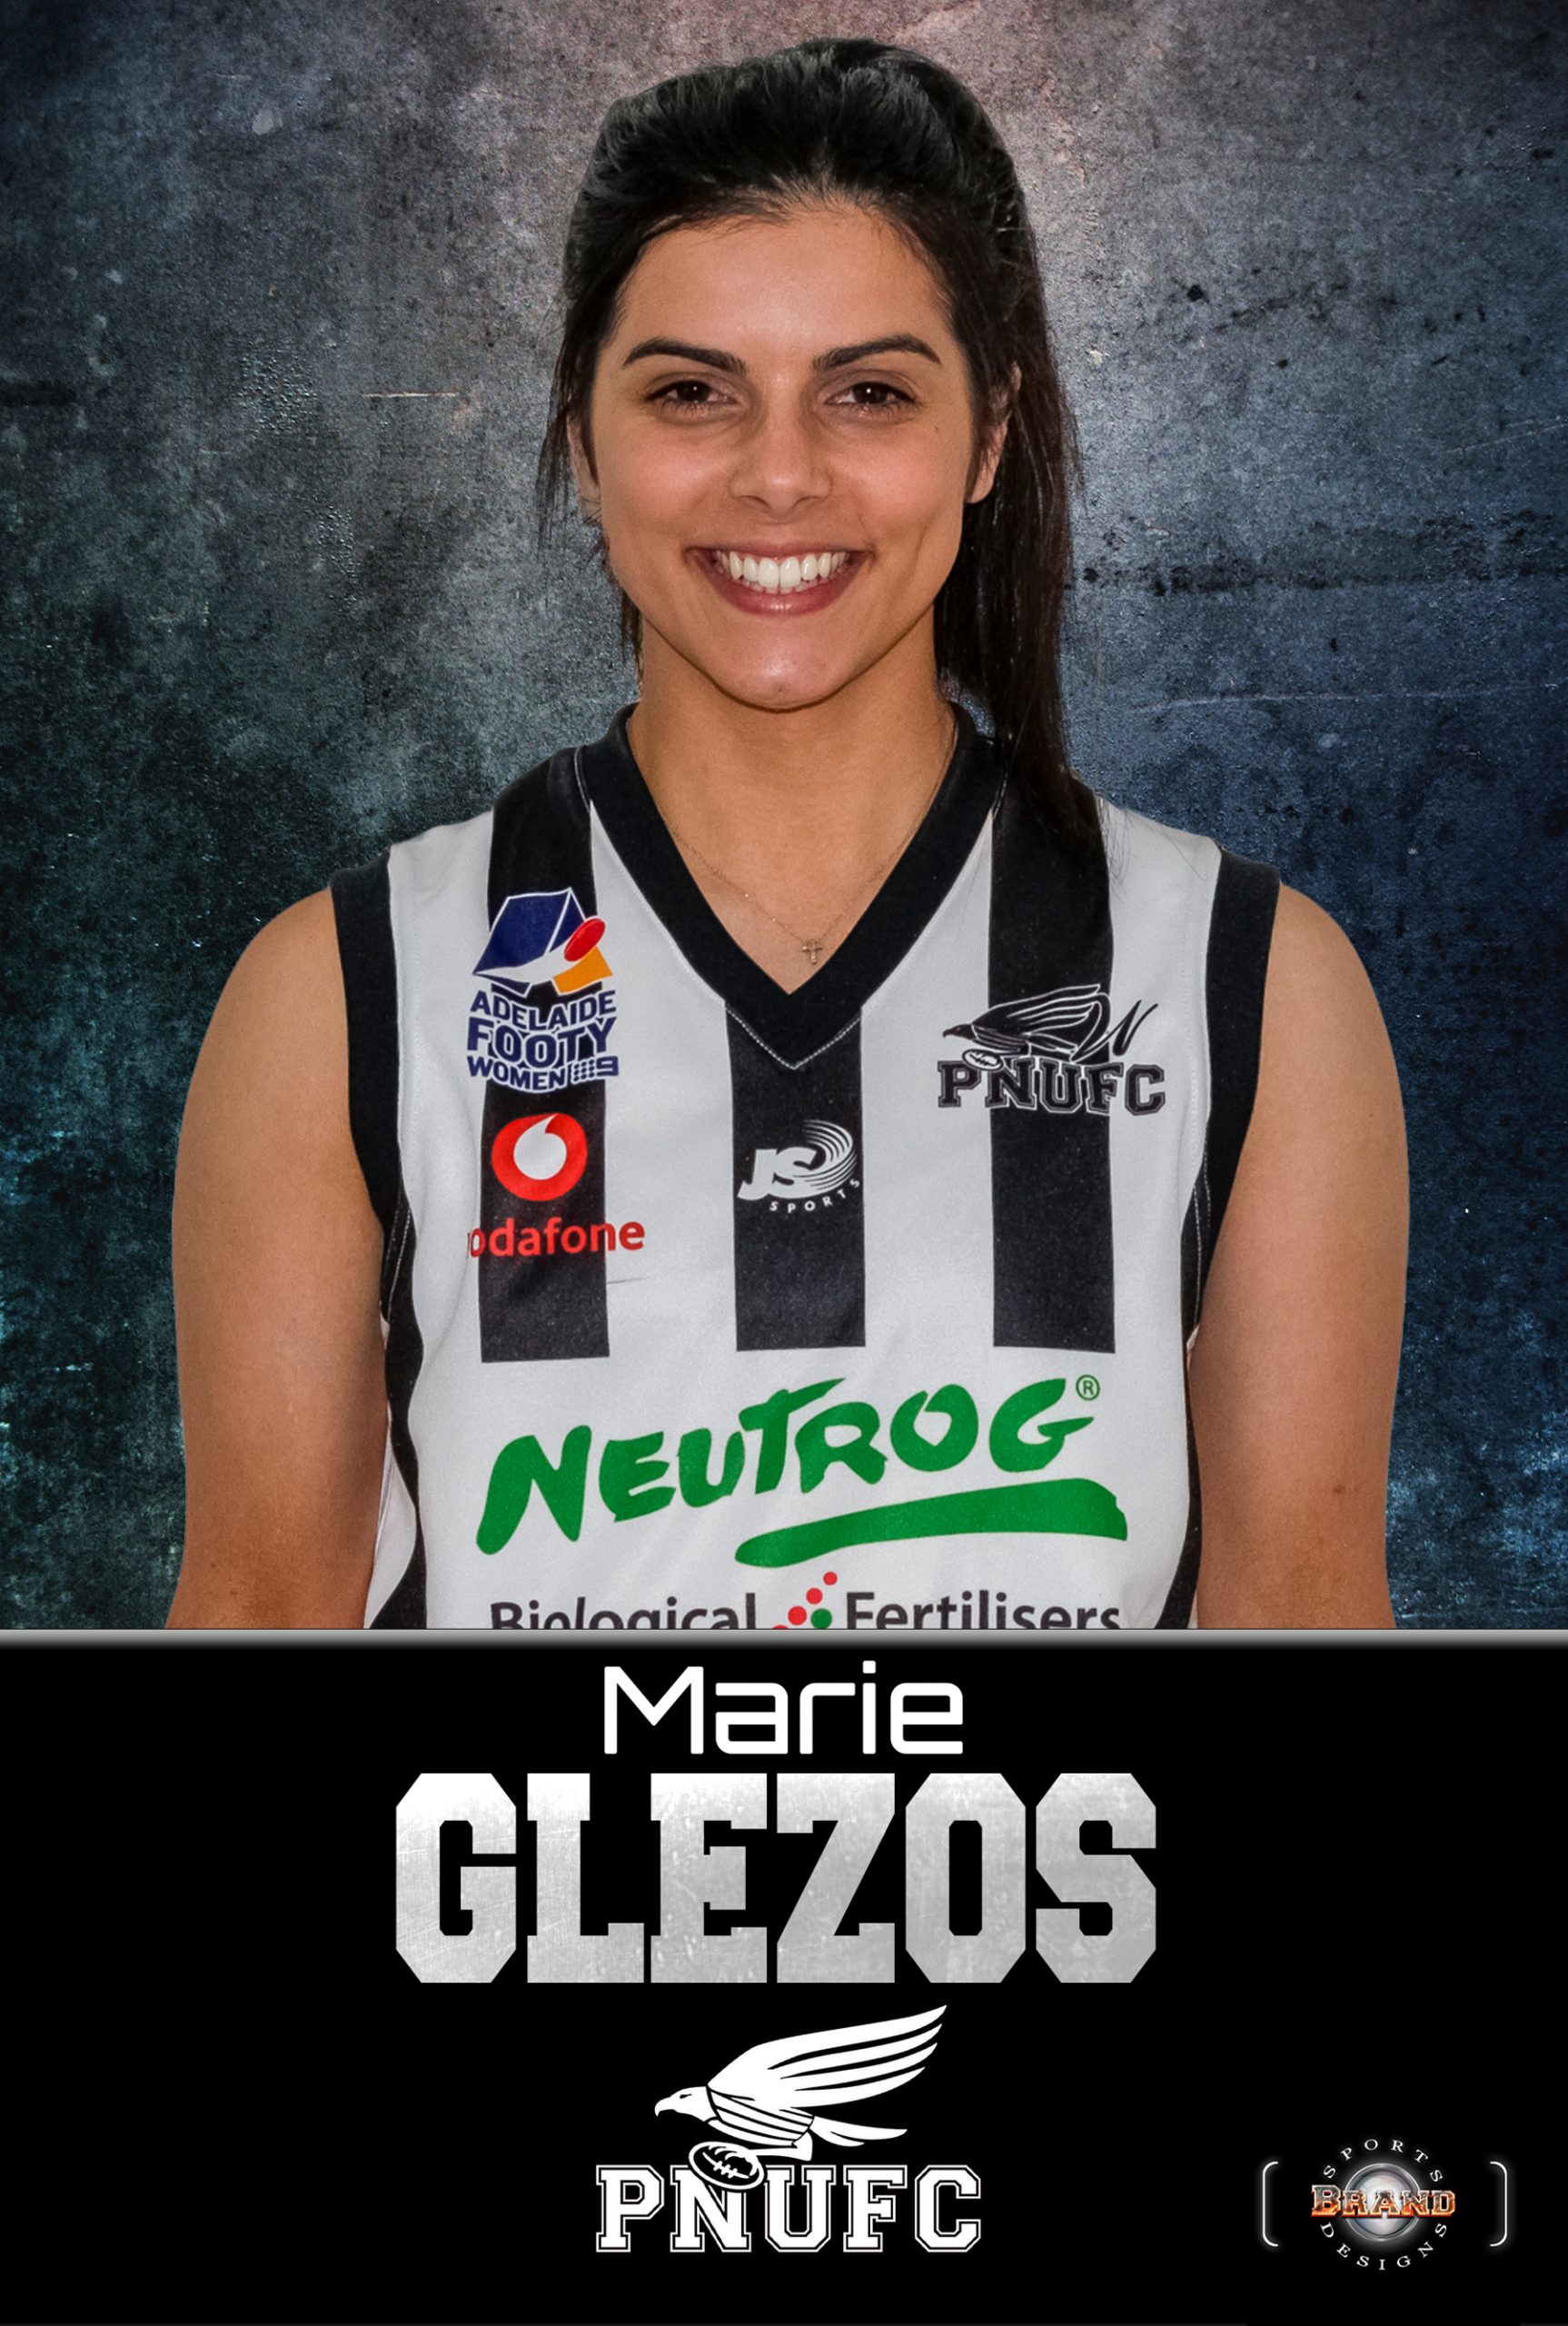 Marie Glezos